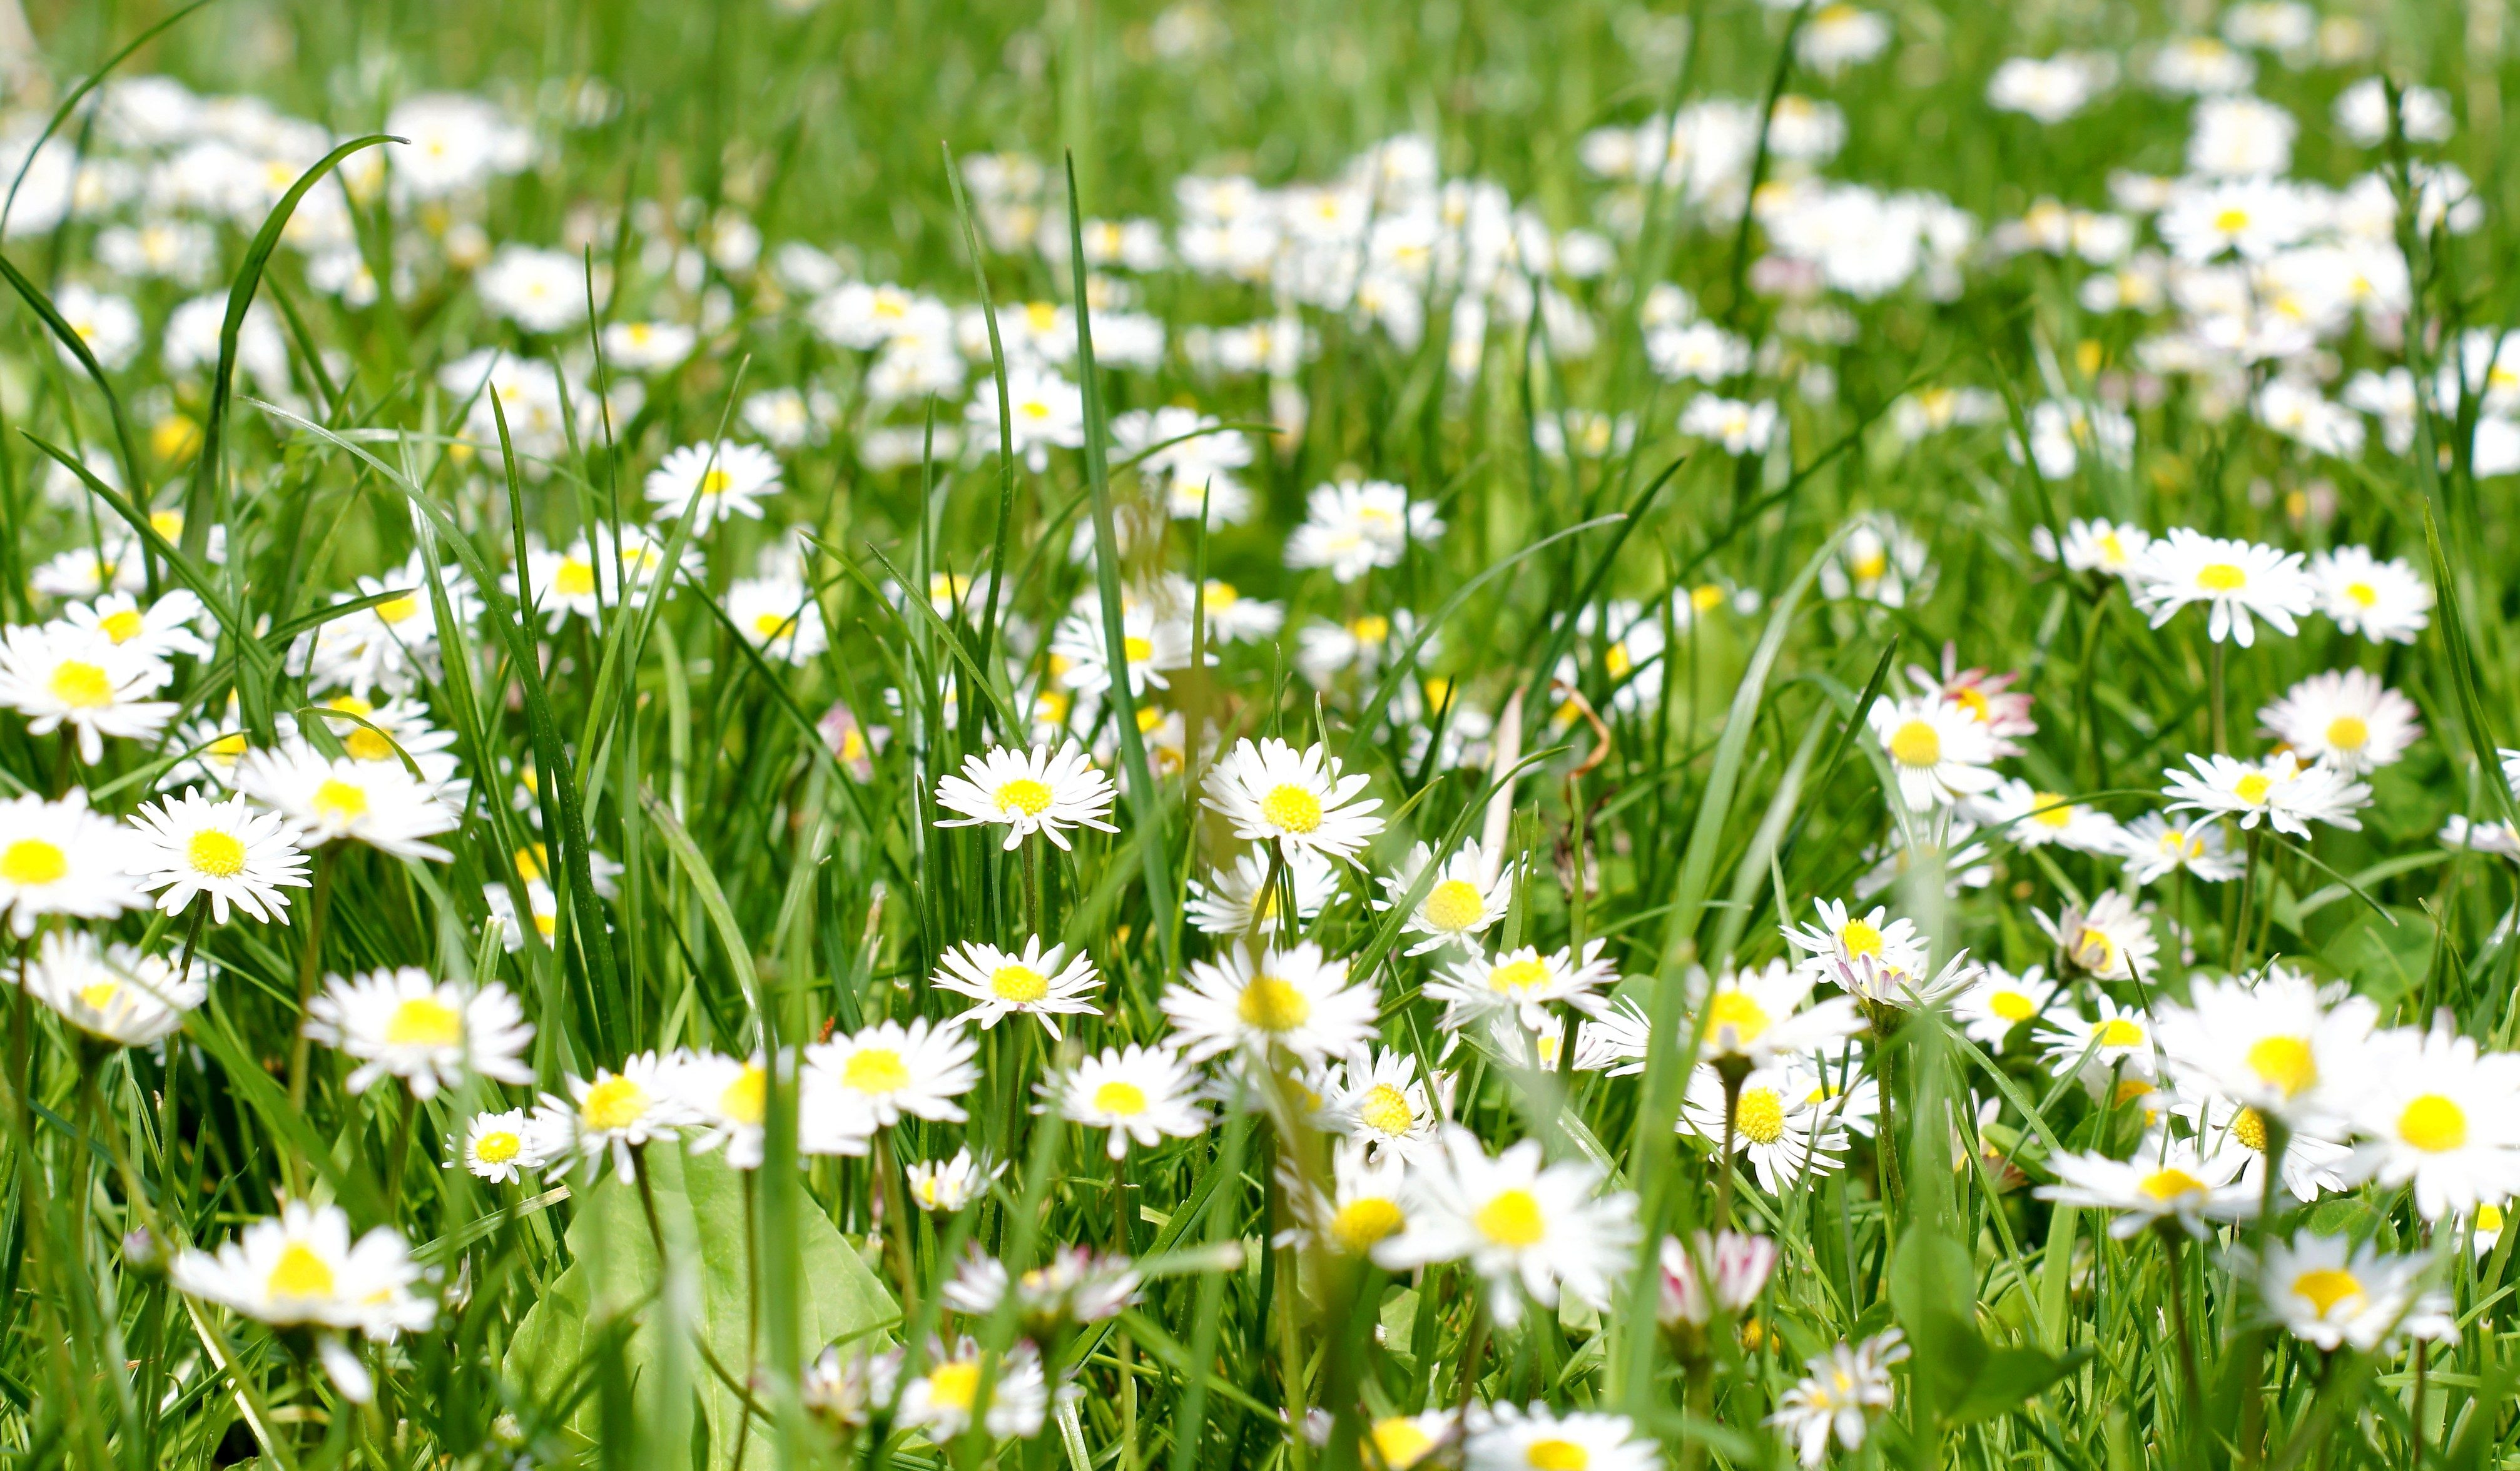 Imagen gratis: flores blancas, campo, verano, grasss verde, margaritas,  hierba